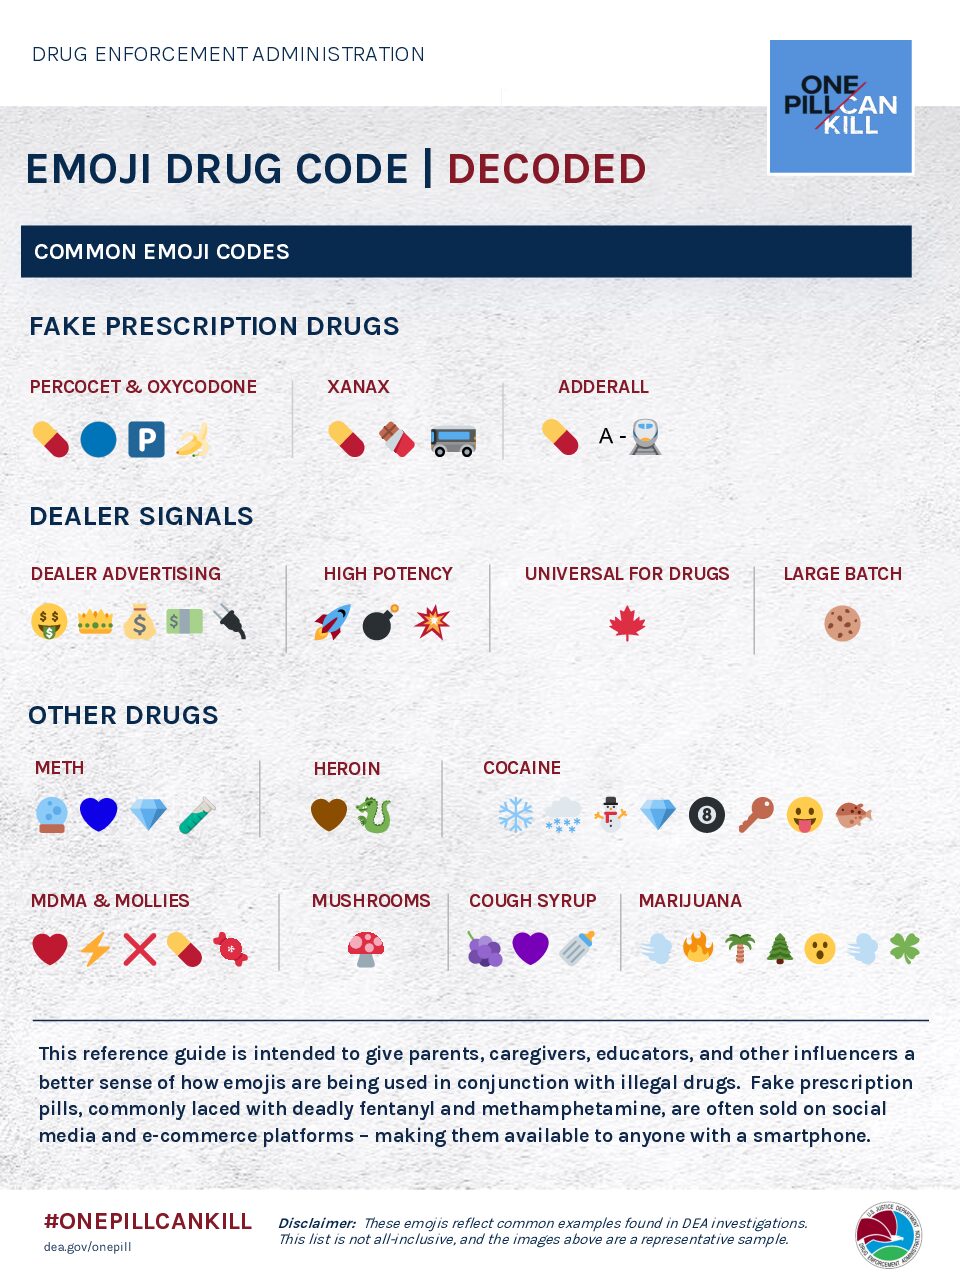 Emoji Drug Code (decoded)